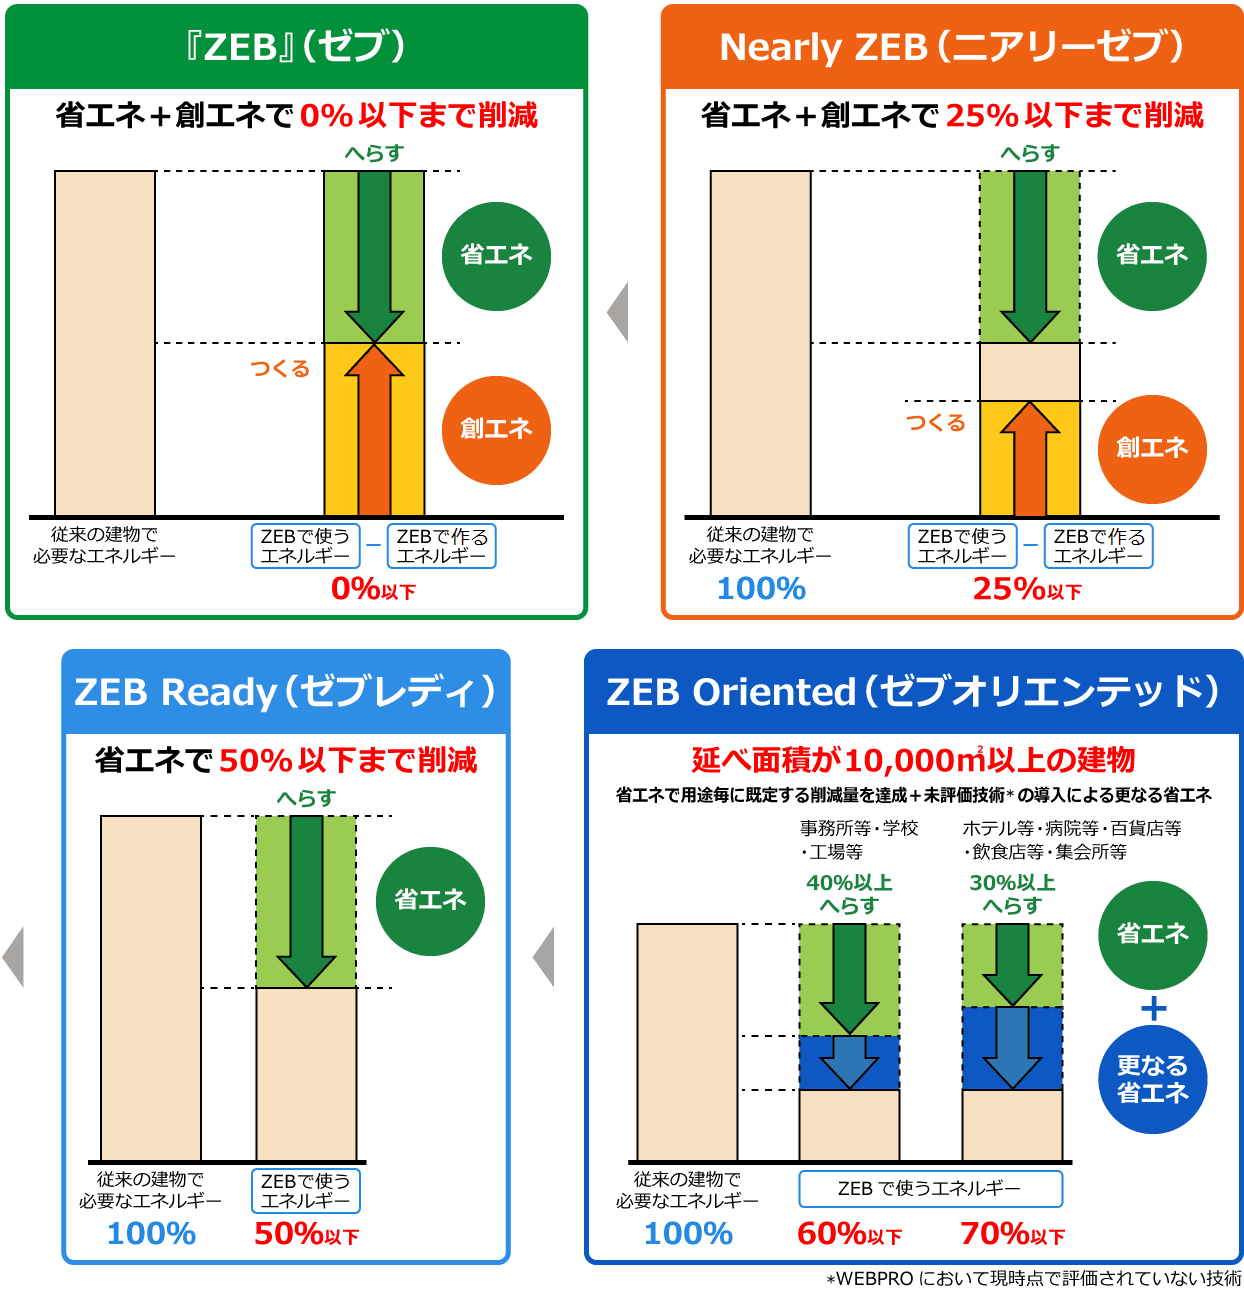 この図は、ゼロエネルギーの達成状況に応じて定義される4段階のZEBシリーズを説明したものです。